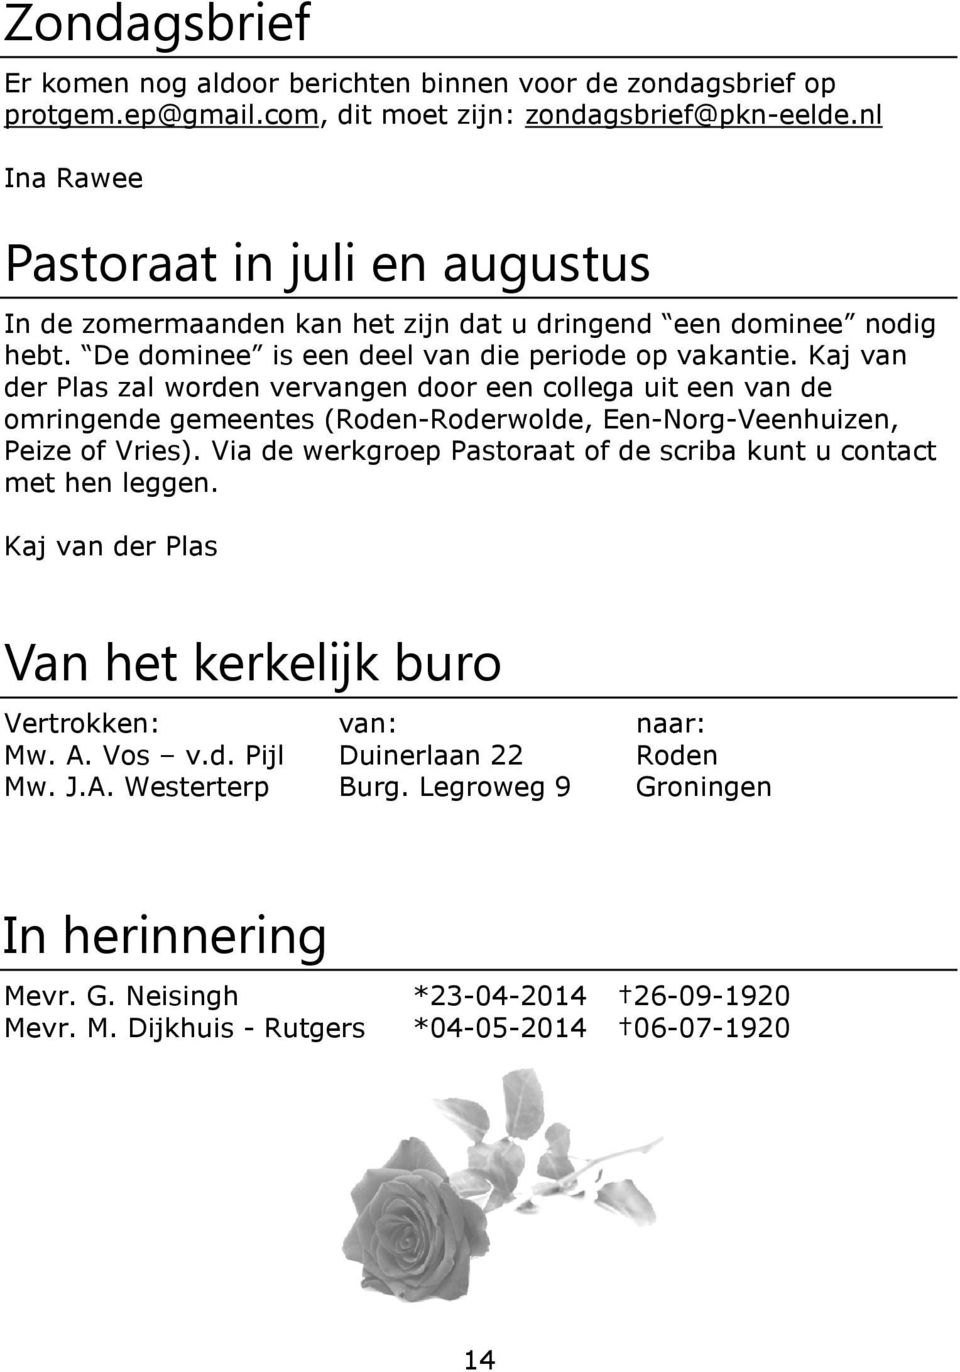 Kaj van der Plas zal worden vervangen door een collega uit een van de omringende gemeentes (Roden-Roderwolde, Een-Norg-Veenhuizen, Peize of Vries).